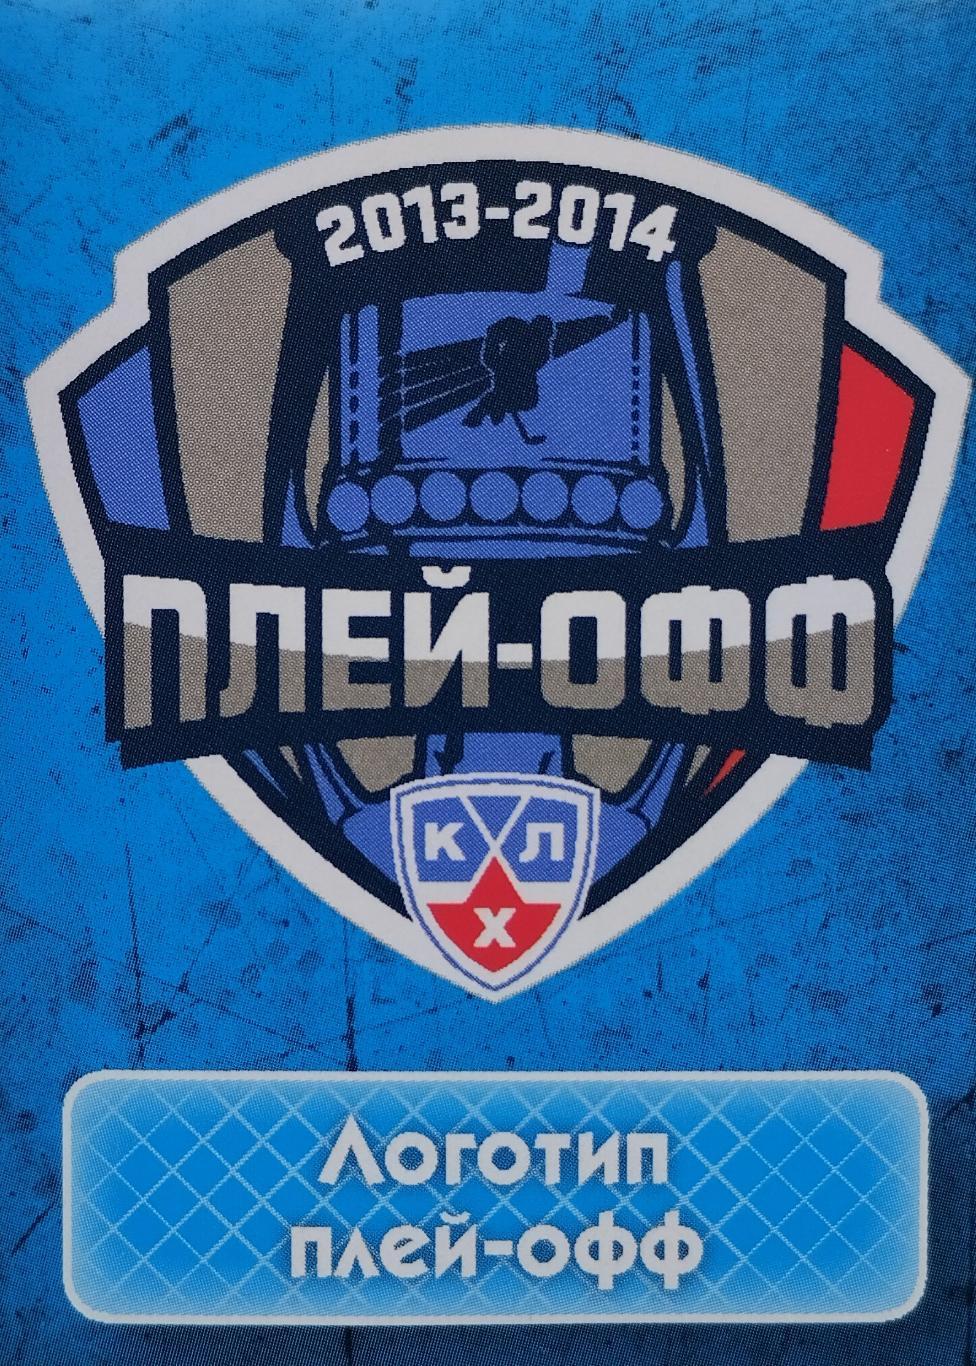 Наклейка. SeReal КХЛ 2013/2014. №202. Логотип плей-офф.